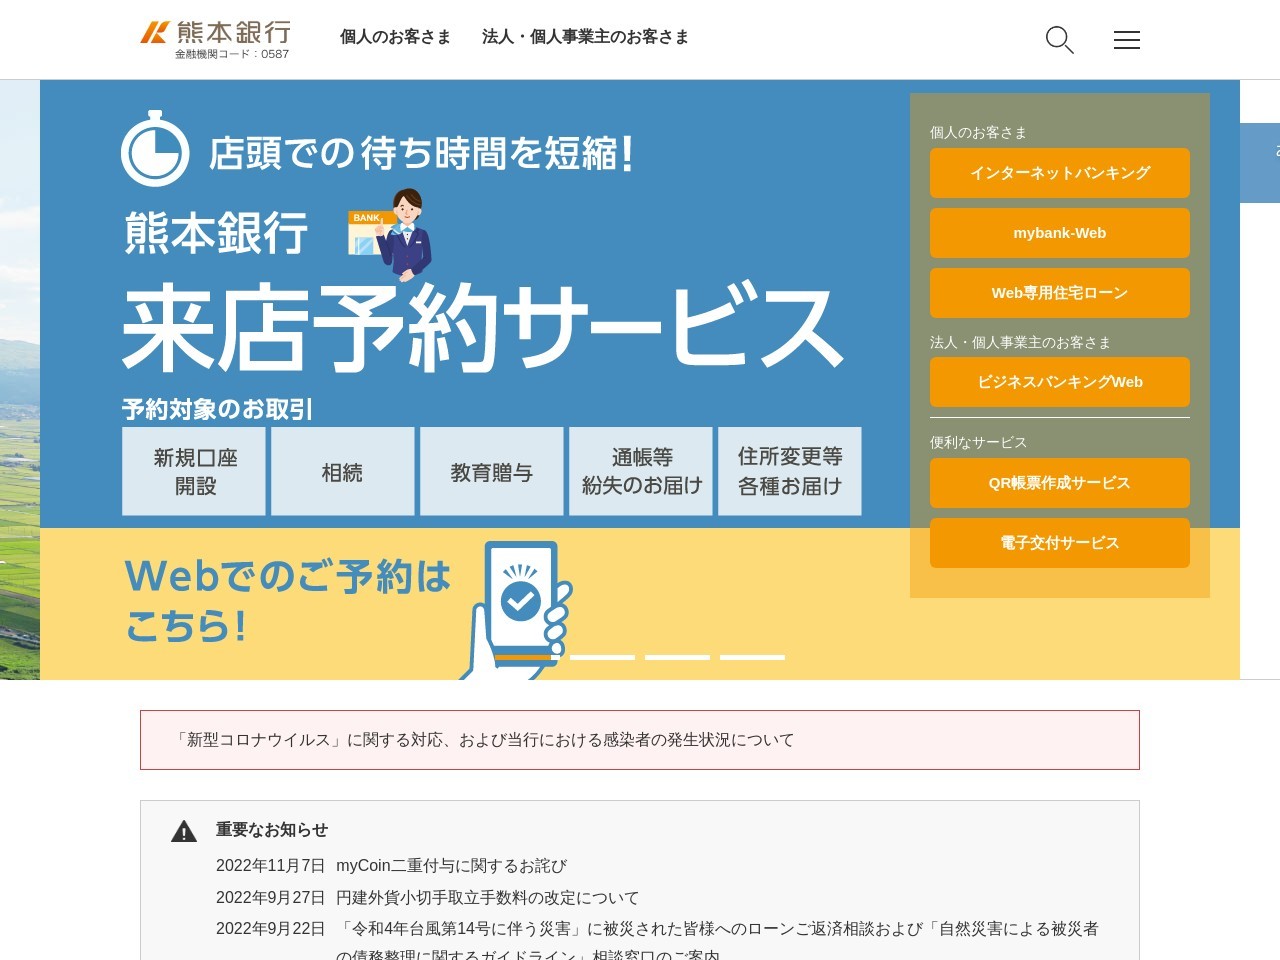 熊本銀行ATM サンリブしみずのクチコミ・評判とホームページ